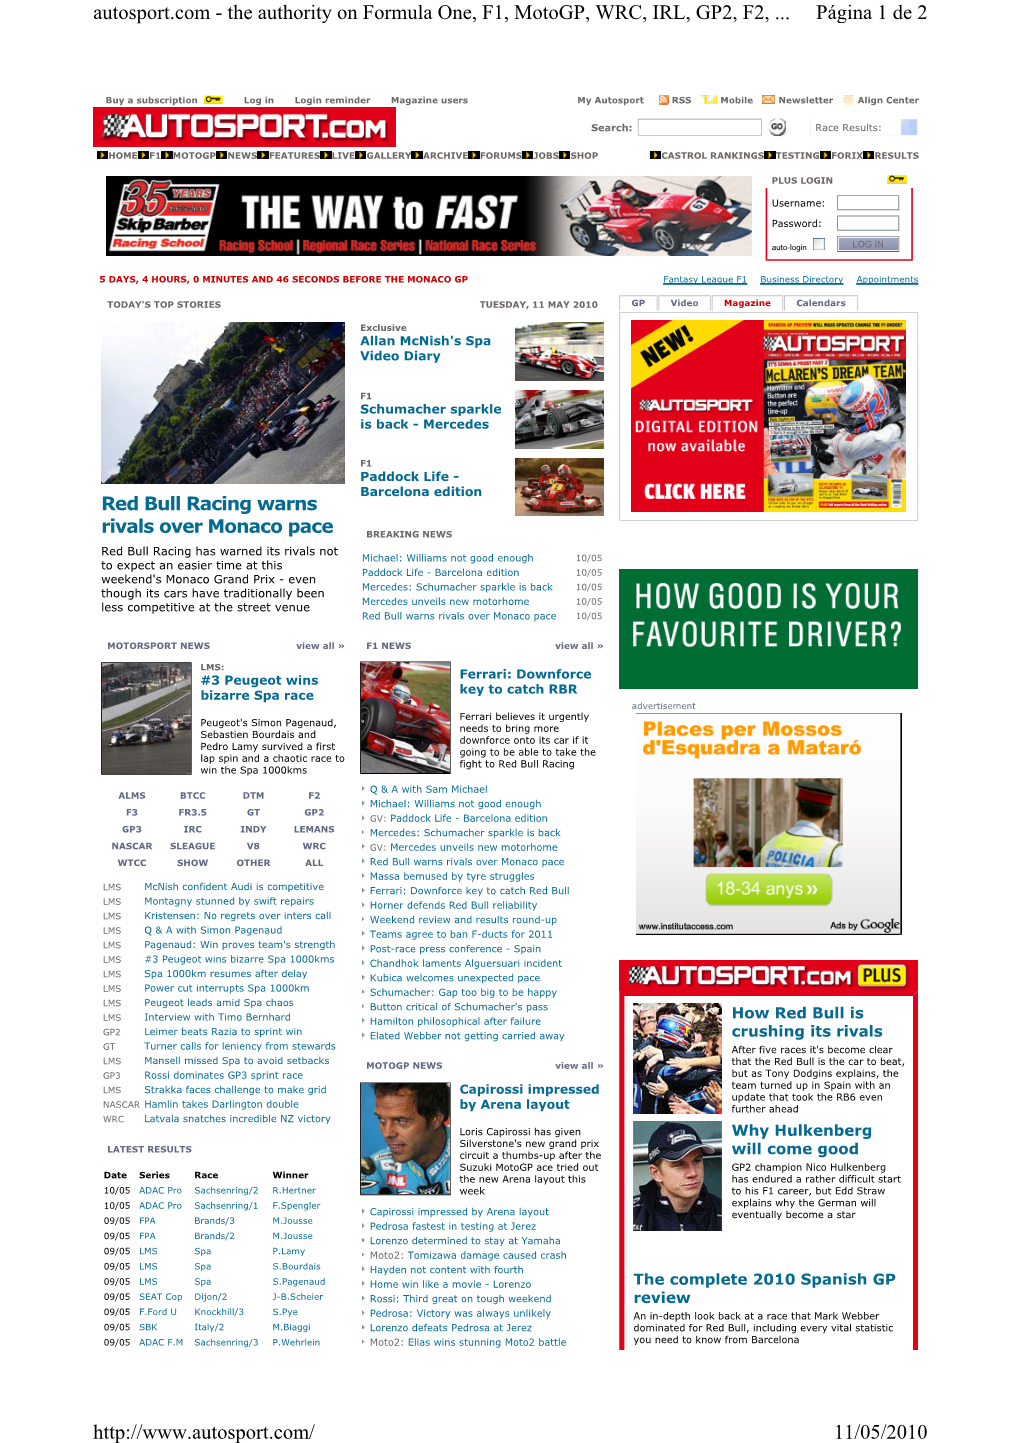 Página 1 De 2 Autosport.Com